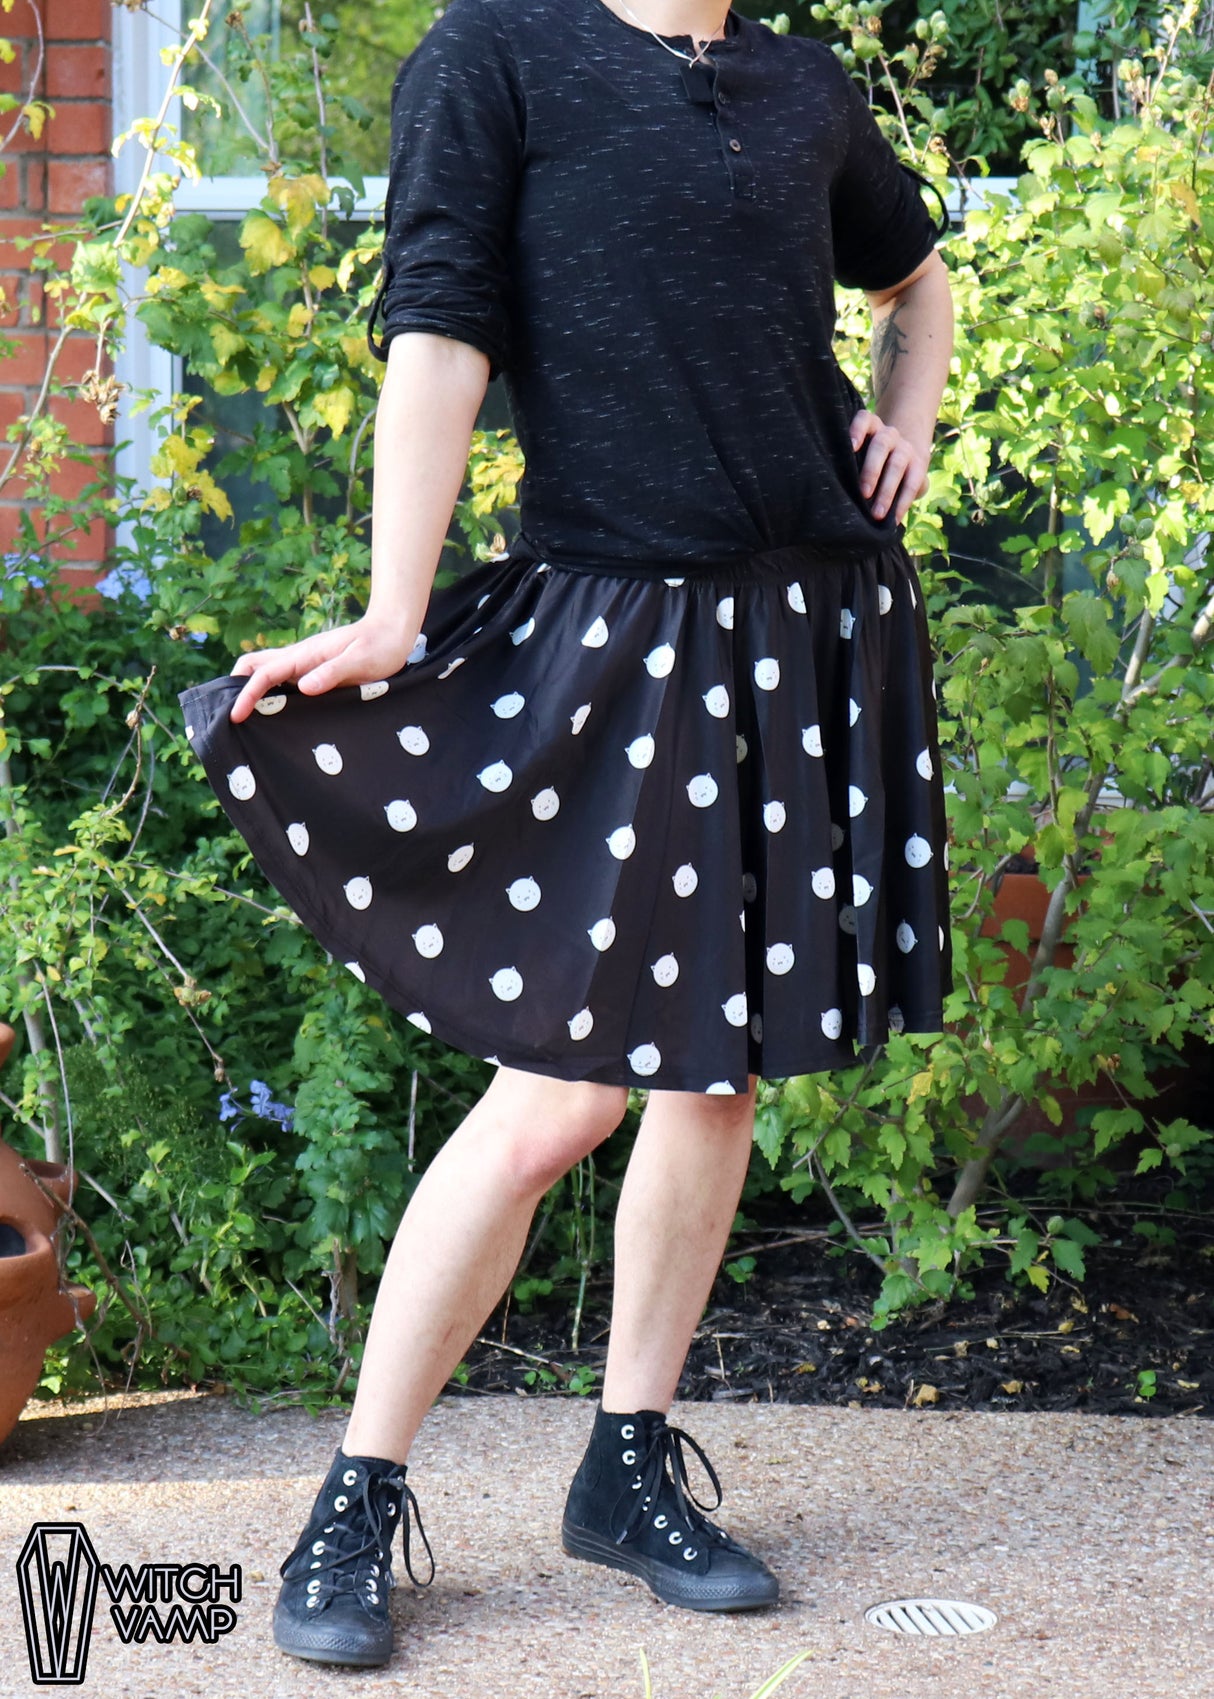 Polkat Dot Skater Skirt with Pockets [RETIRED]